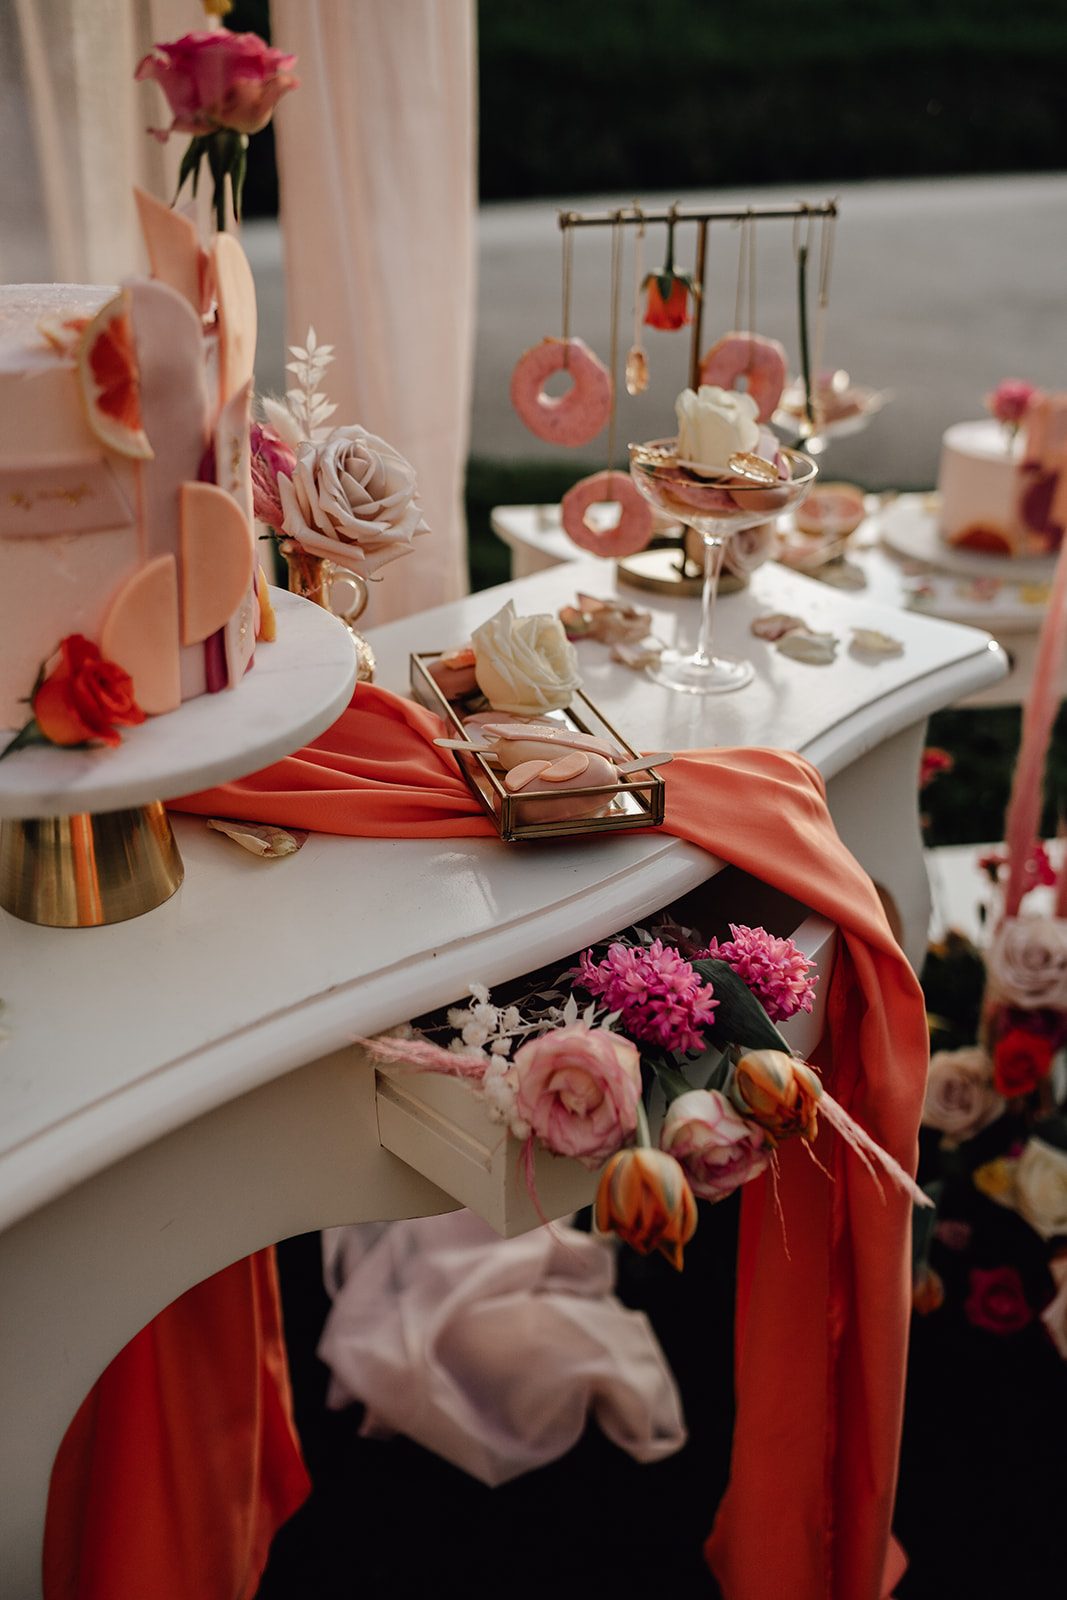 Sweetable, colorful, weddingcake, Hochzeitstorte